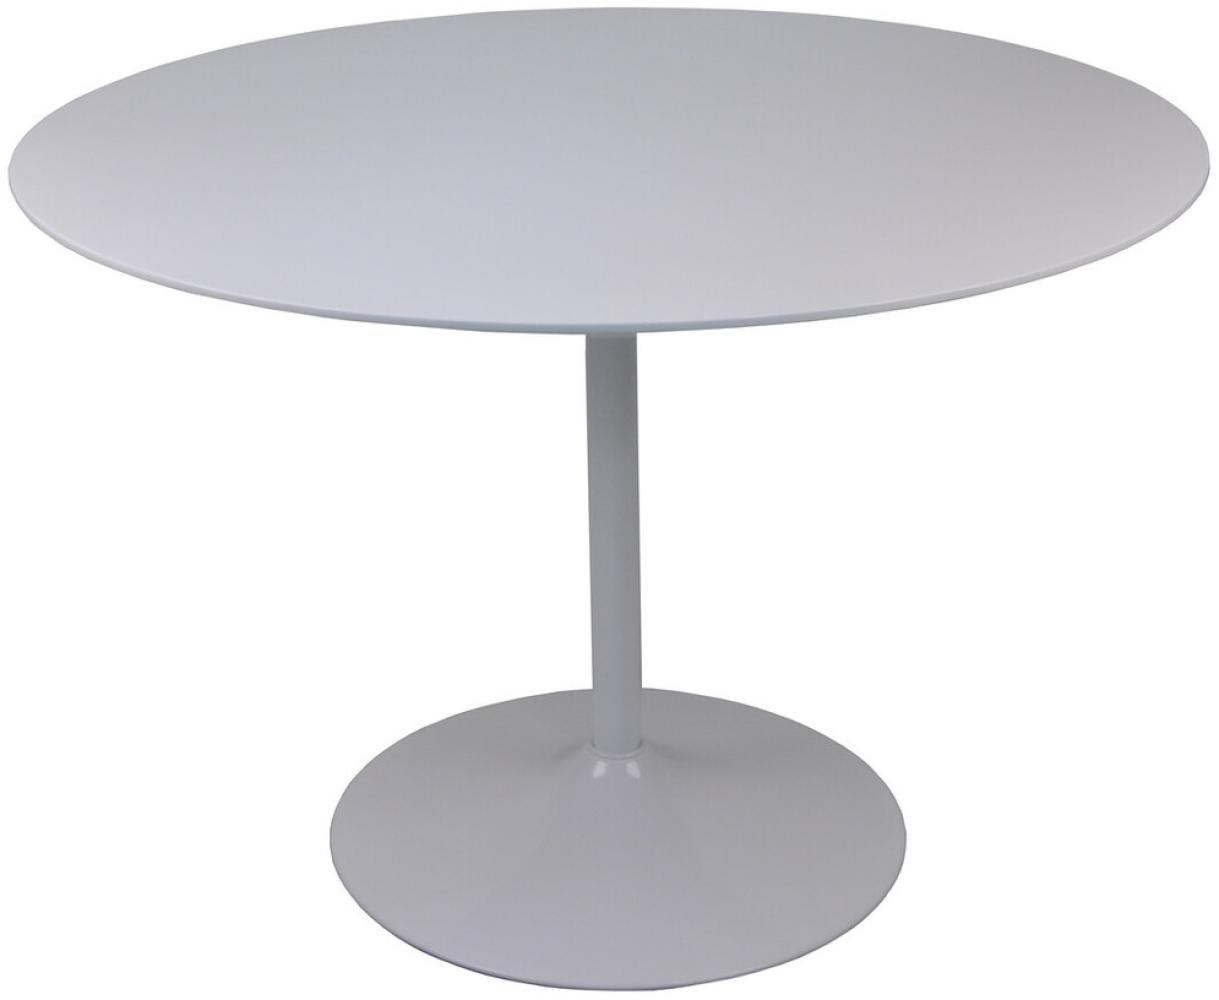 SalesFever Tisch Bistrotisch rund weiß Ø110 cm Metall, MDF L = 110 x B = 110 x H = 75 Bild 1